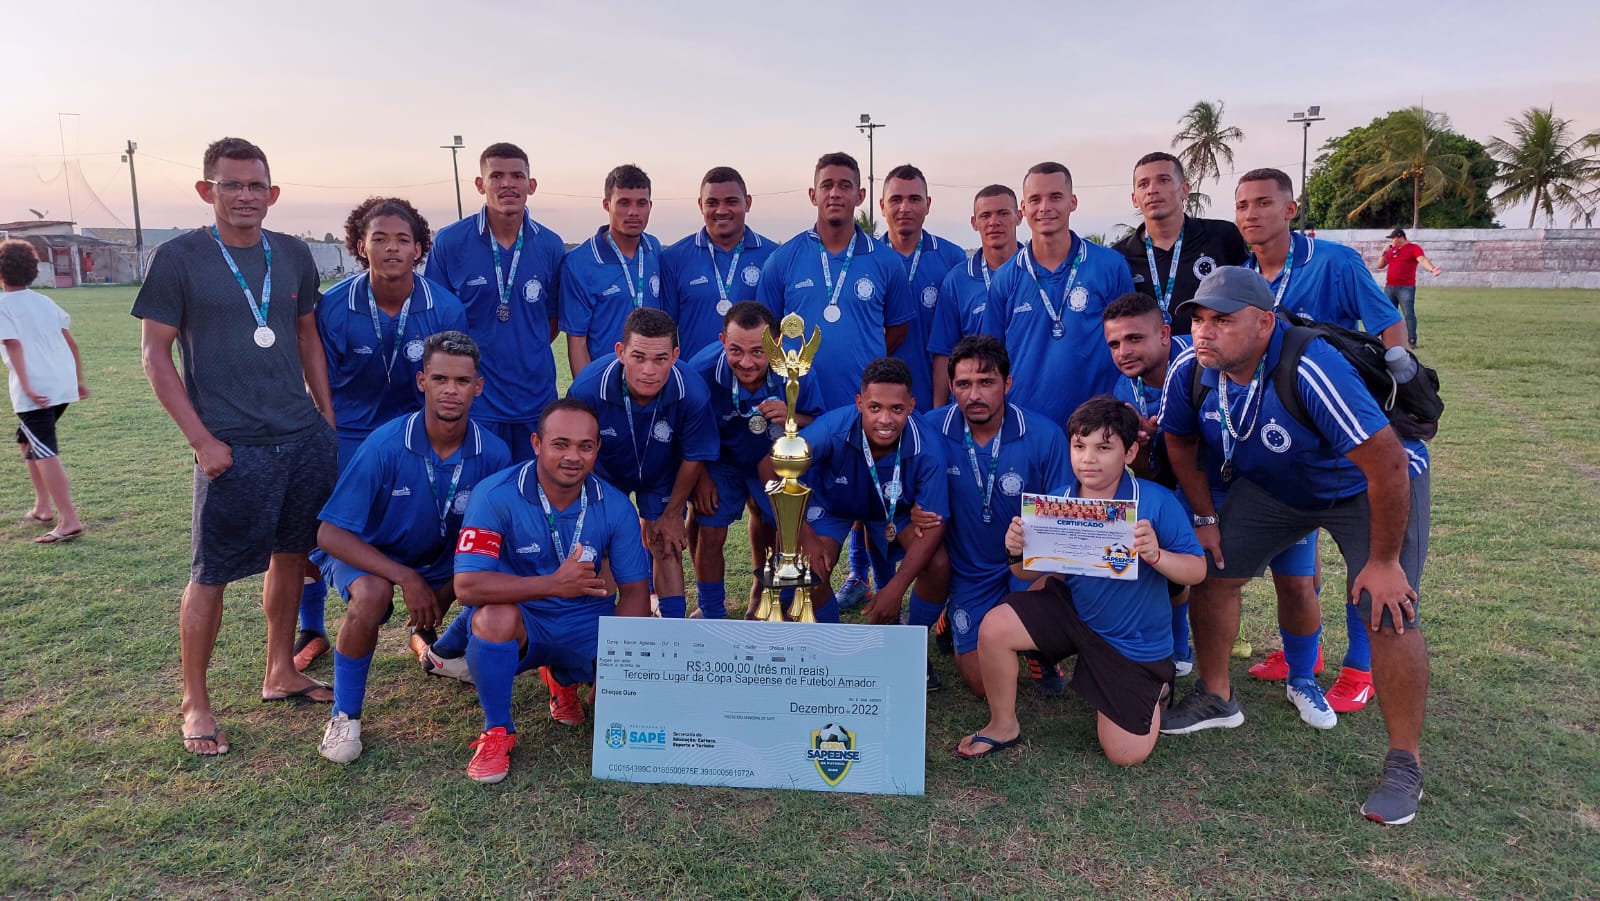 Cruzeiro de Cuité vence Atlético Sapeense e conquista o terceiro lugar no Campeonato de Futebol Amador